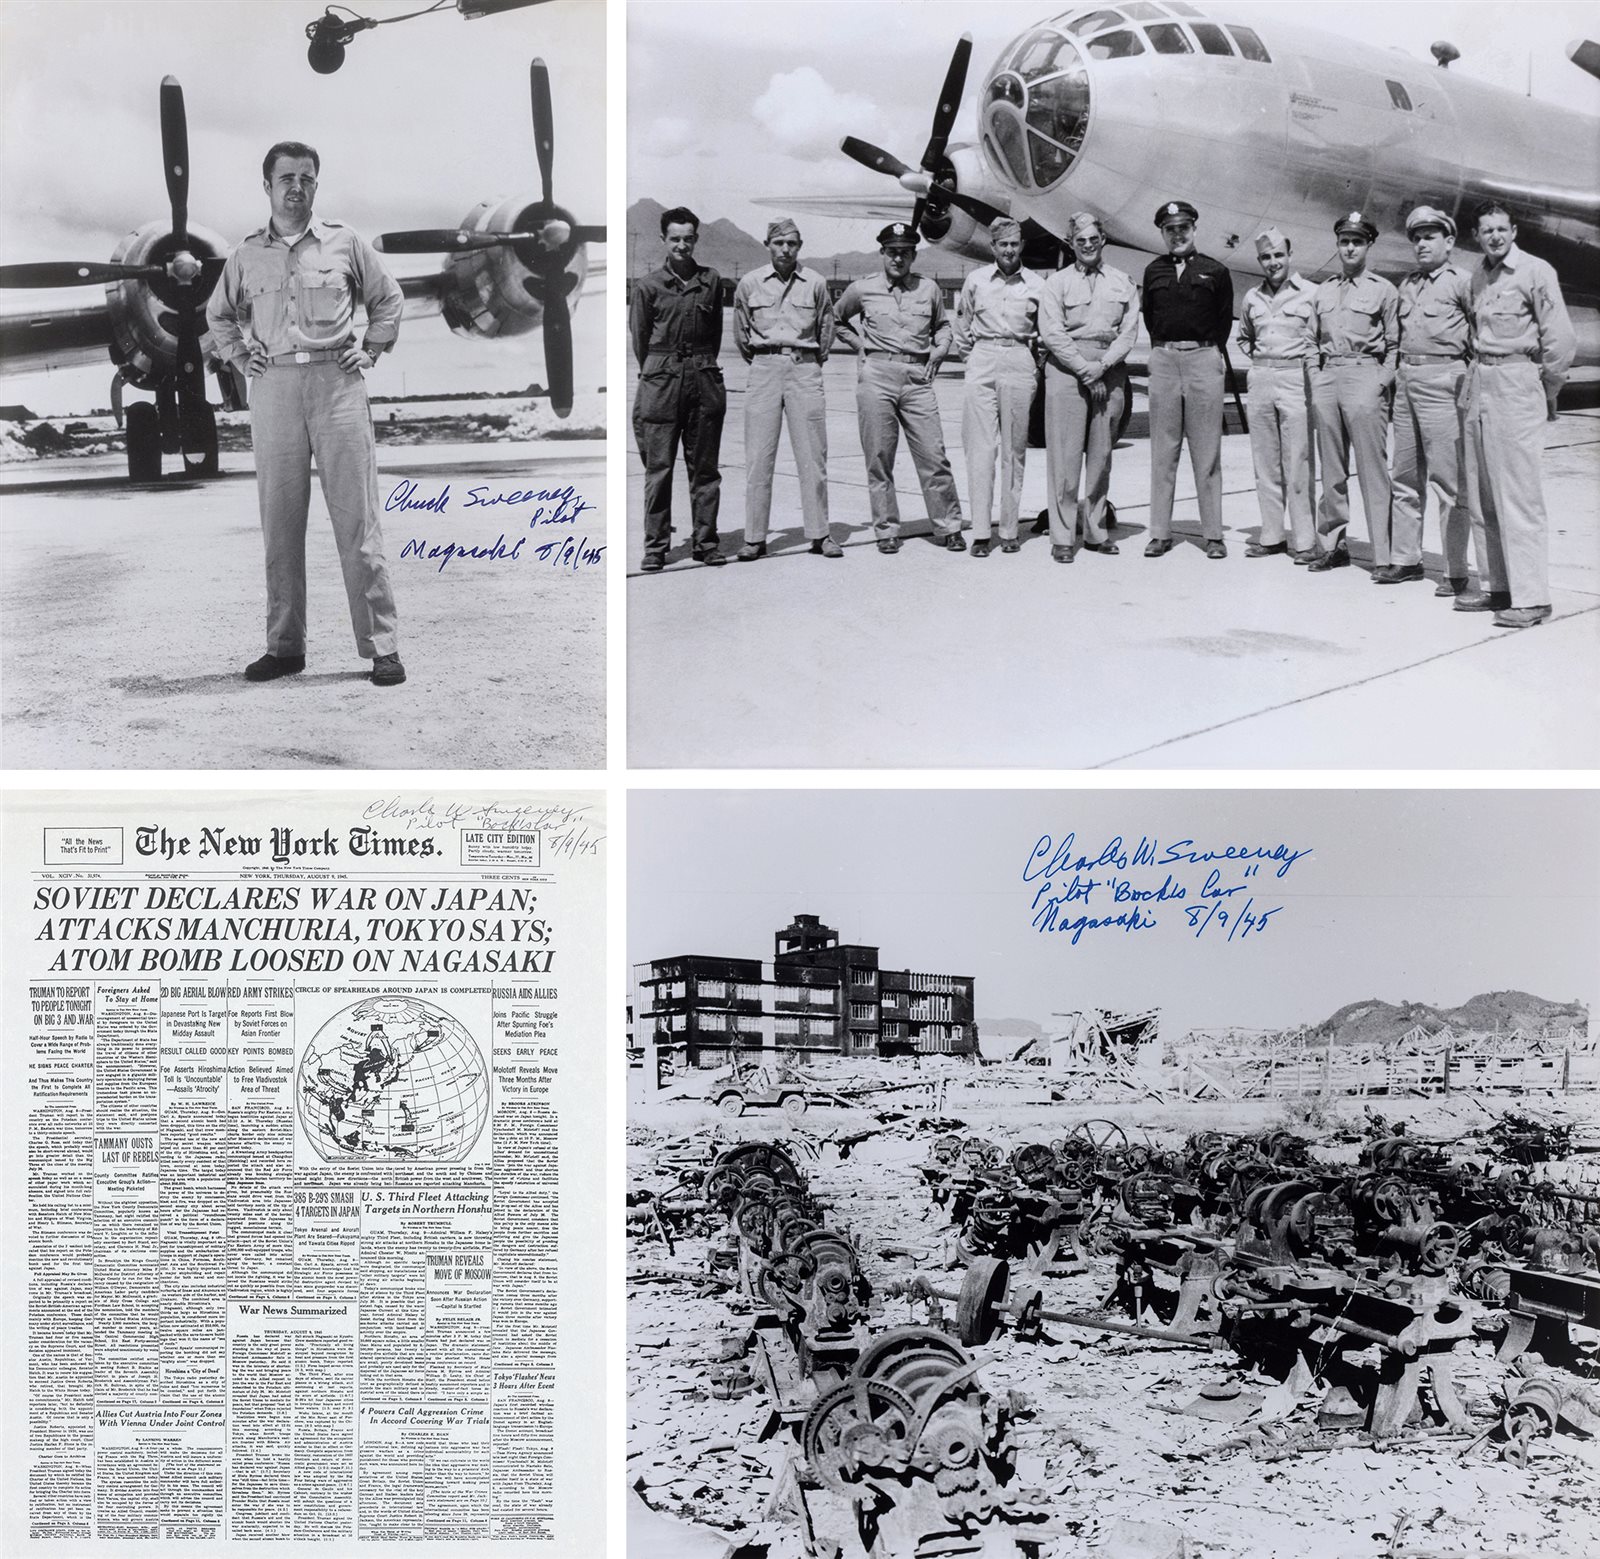 唯一参加两次核轰炸日本的美国飞行员查尔斯·斯维尼签名照片及文件一组